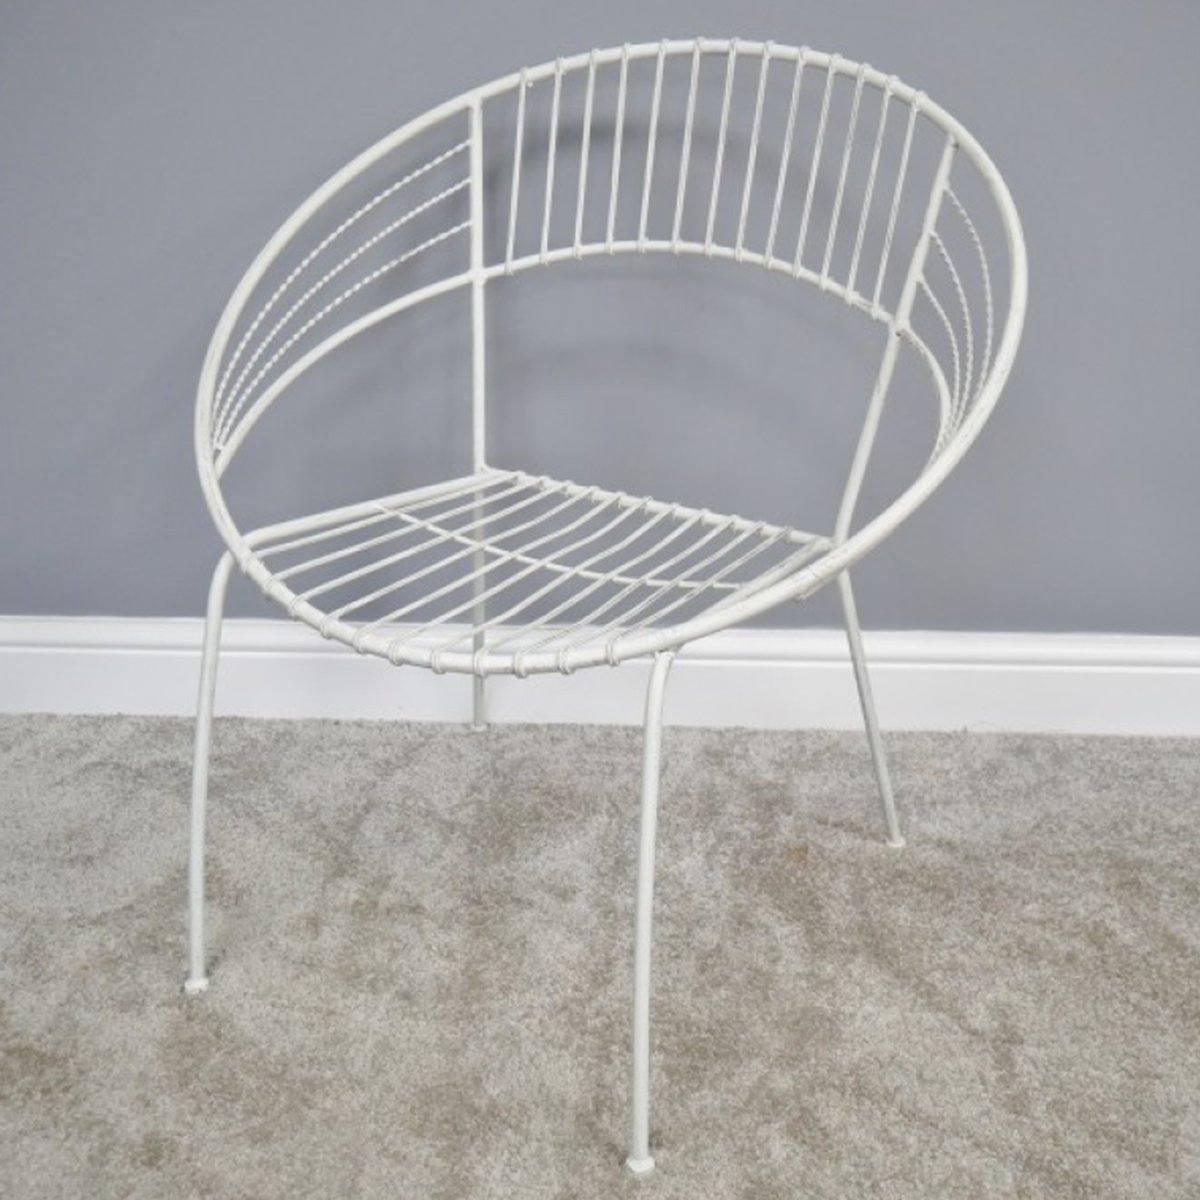 Retro White Wire Garden Chair